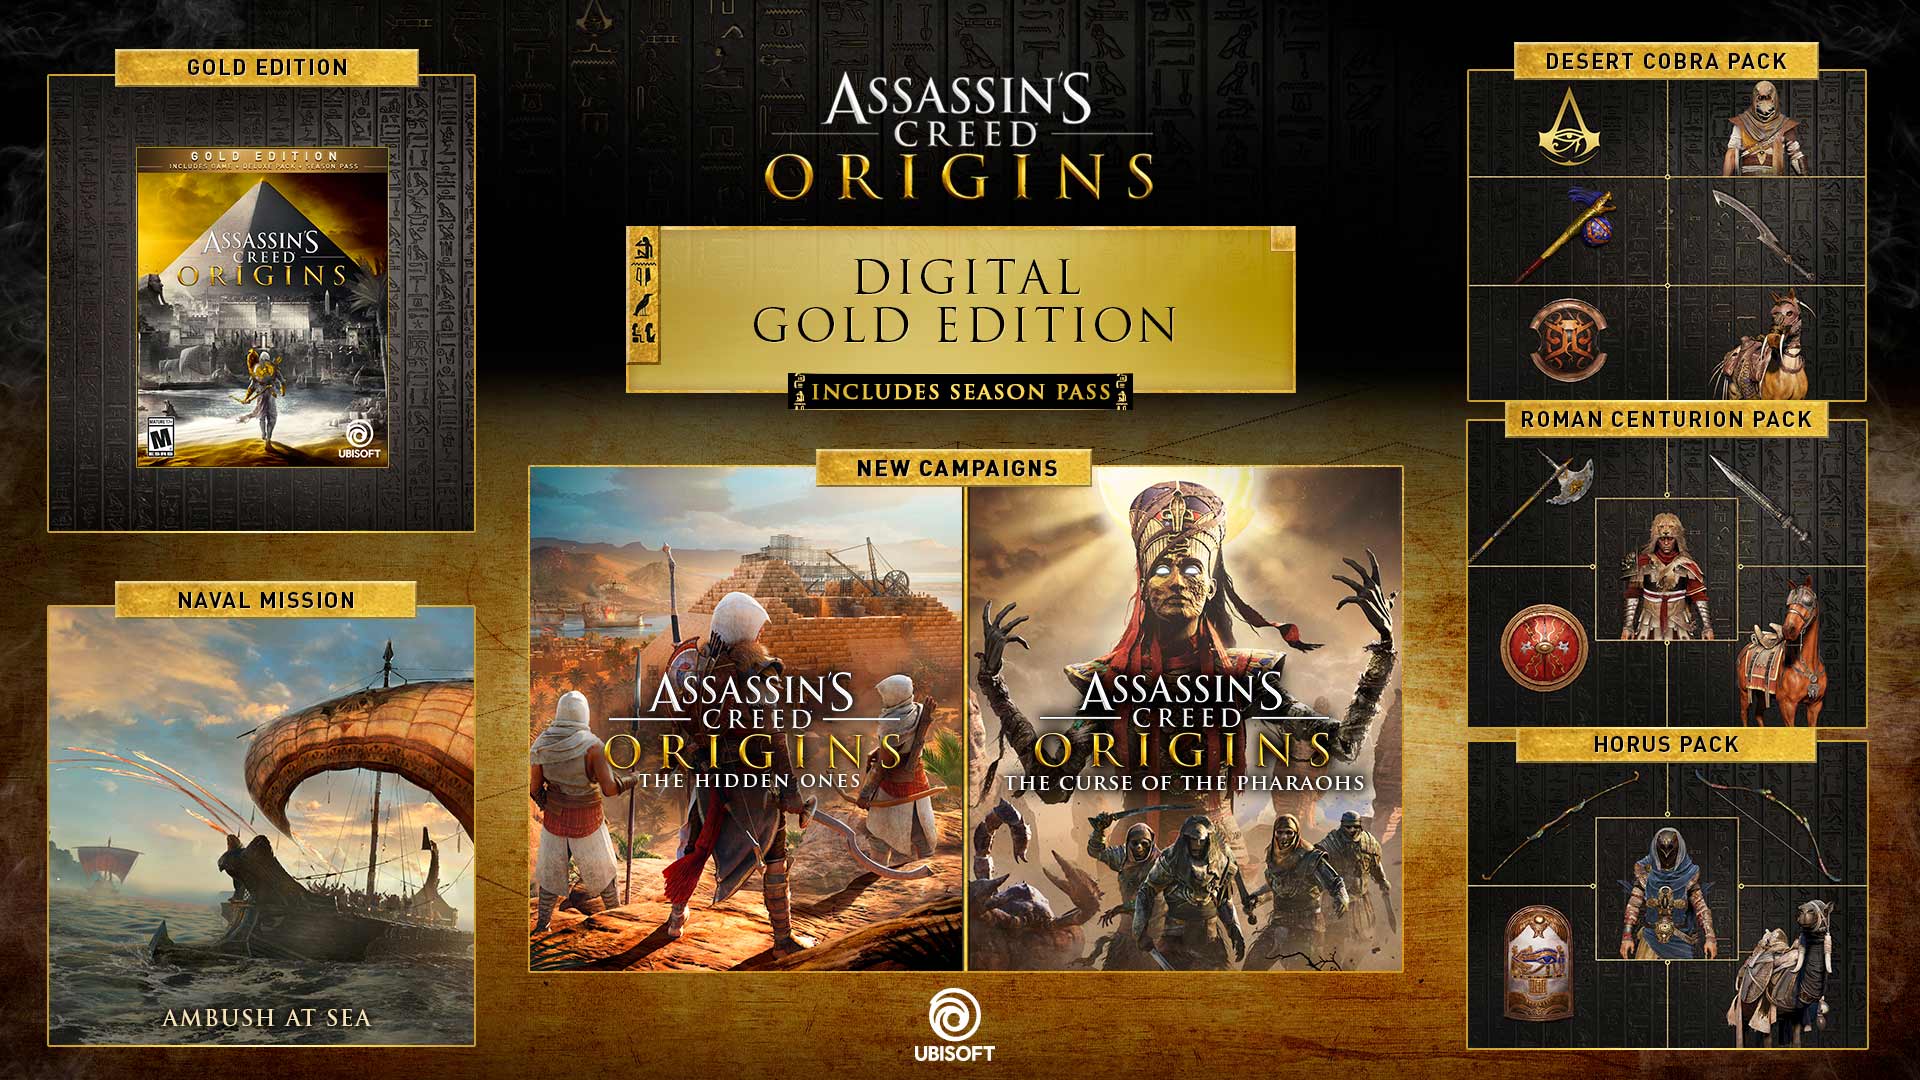 Mua Assassin\'s Creed Origins phiên bản vàng trên PC: Sở hữu ngay phiên bản cao cấp của trò chơi cực kỳ nổi tiếng Assassin\'s Creed Origins, với nhiều tính năng độc quyền và cả một bản nhạc trong trẻo, tuyệt vời. Trải nghiệm hành trình săn lùng ẩn mình giữa những dòng sông và sa mạc, khám phá bí mật cổ đại của Ai Cập, và chiến đấu với kẻ thù đầy nguy hiểm.